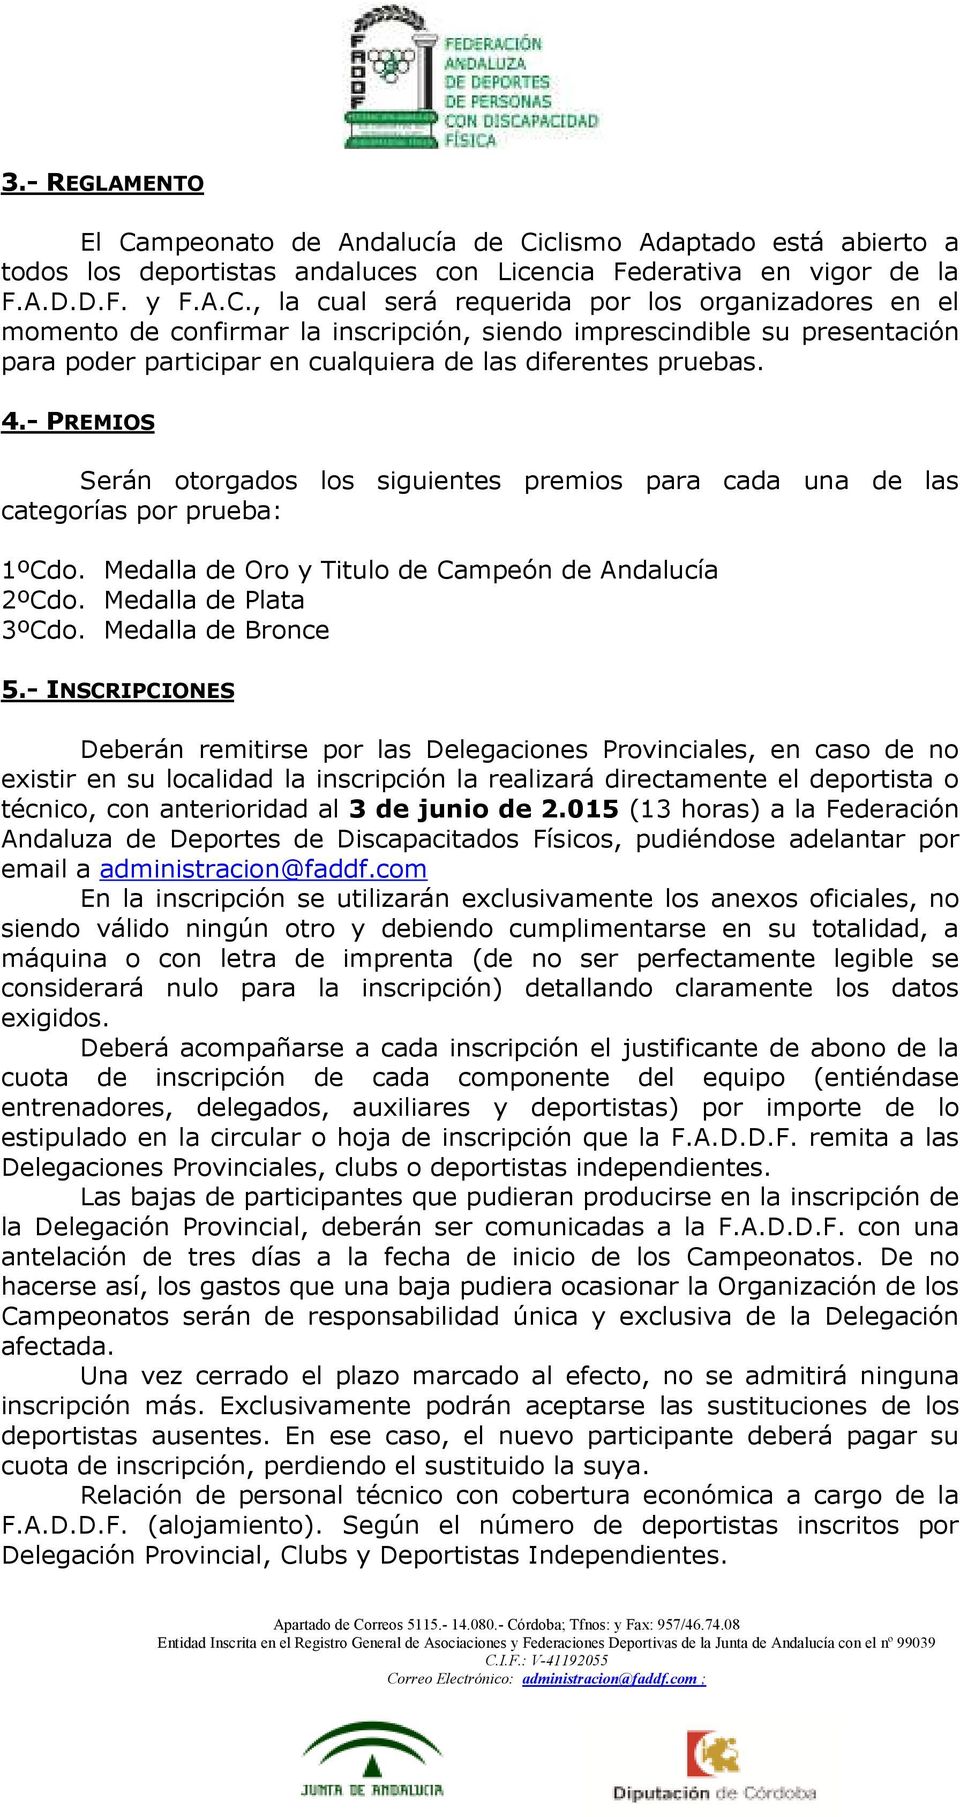 clismo Adaptado está abierto a todos los deportistas andaluces con Licencia Federativa en vigor de la F.A.D.D.F. y F.A.C.